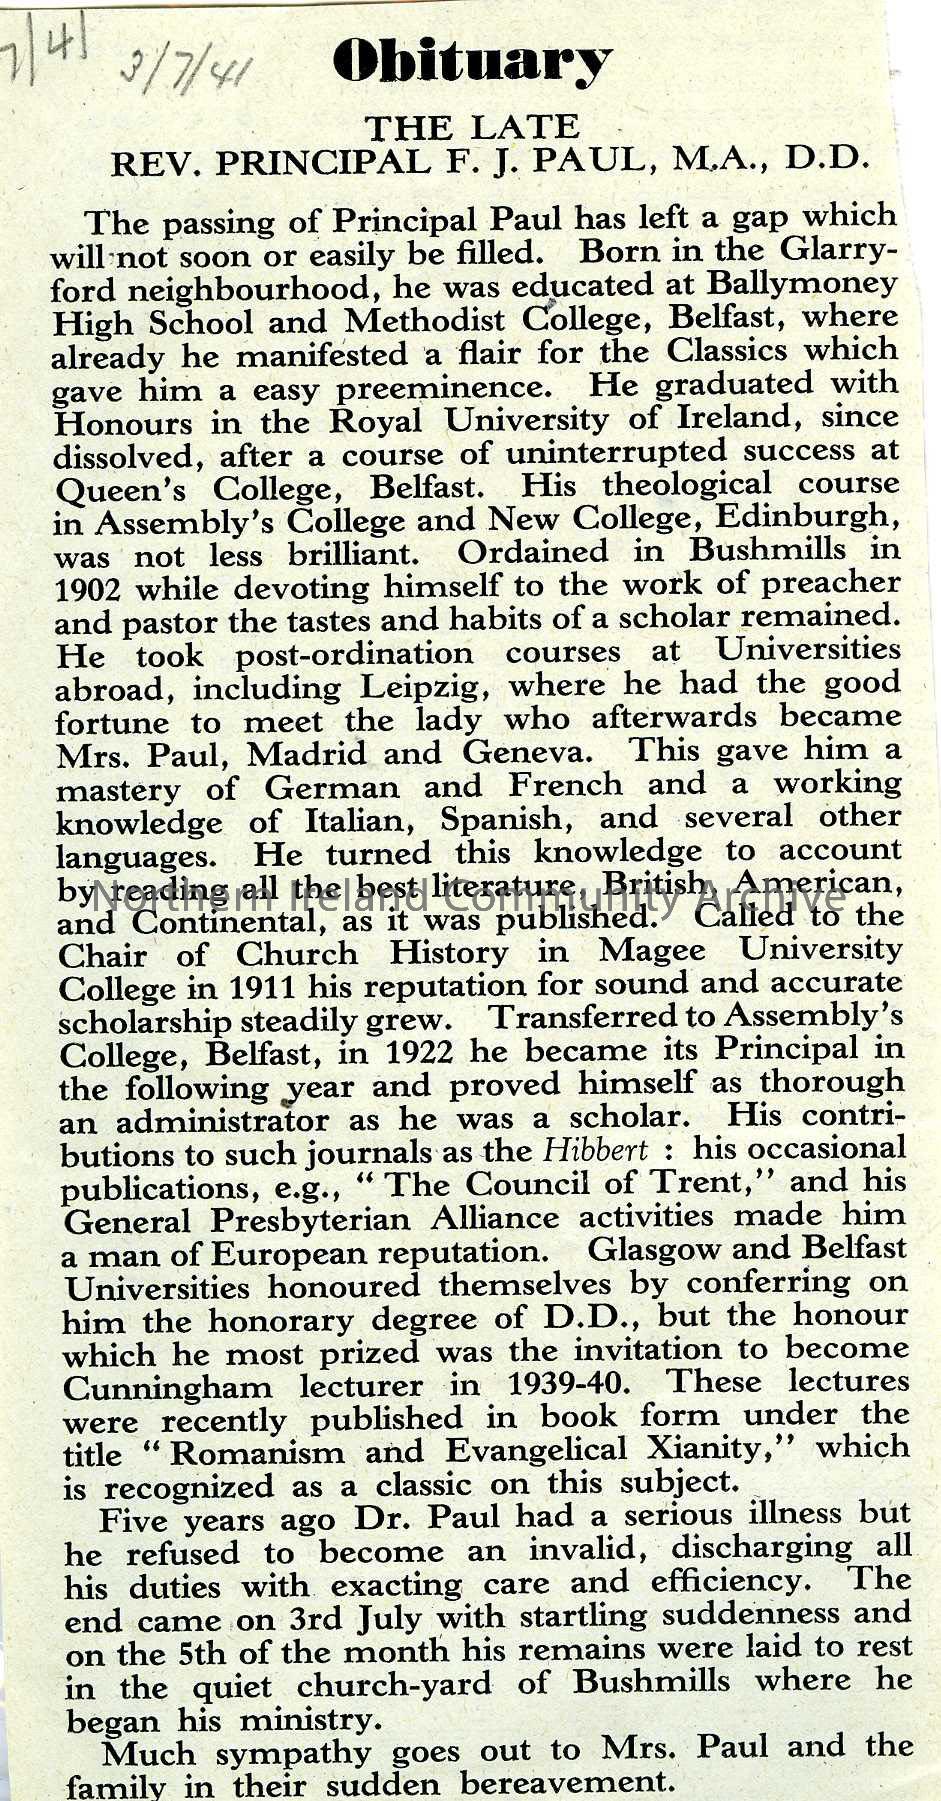 newspaper cutting re obituary of a Rev. Principal Paul